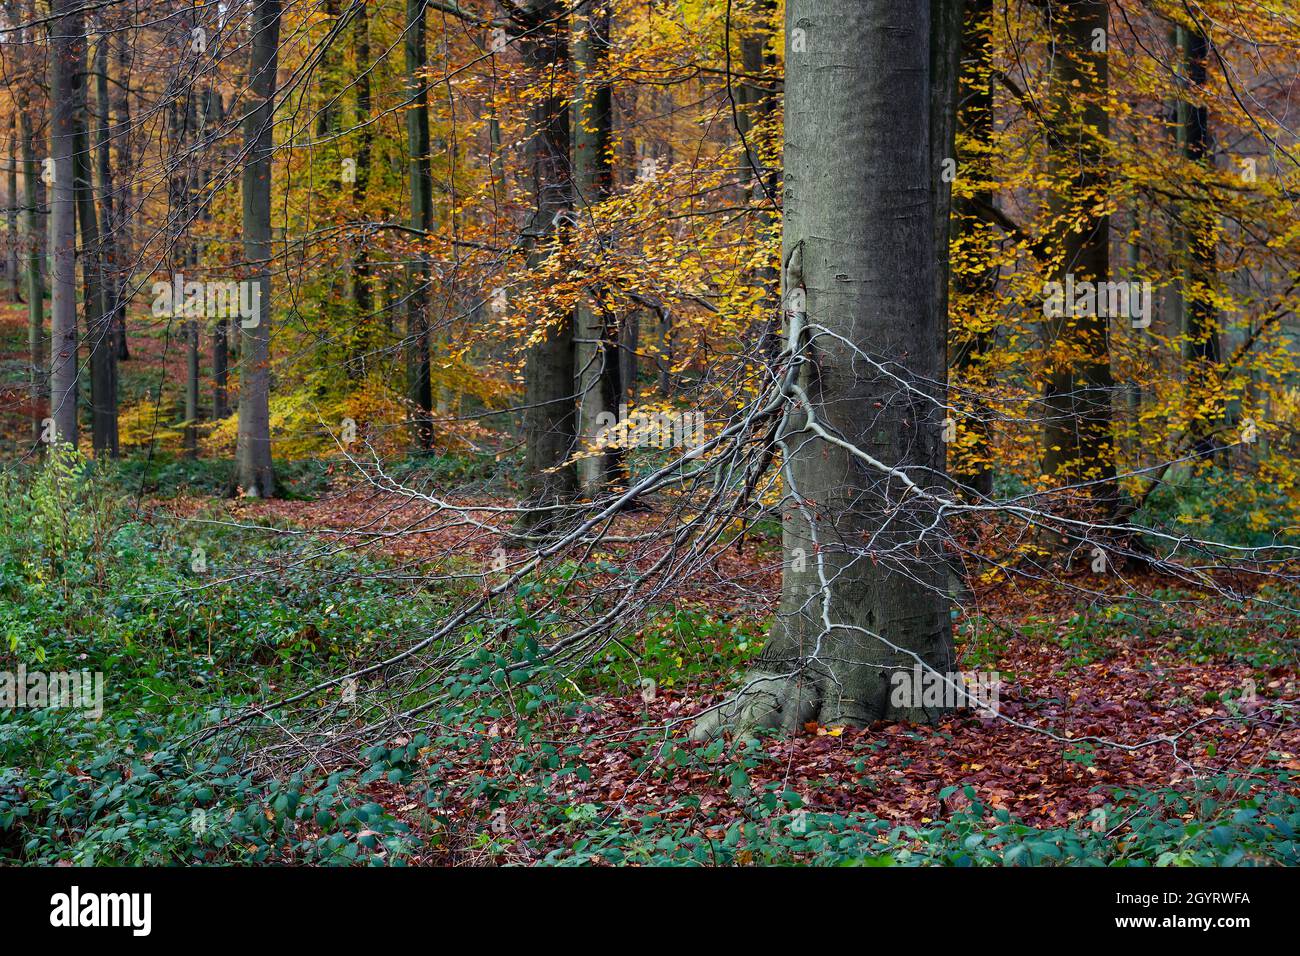 Hêtre européen (Fagus sylvatica) dans une ancienne forêt aux couleurs automnales Banque D'Images